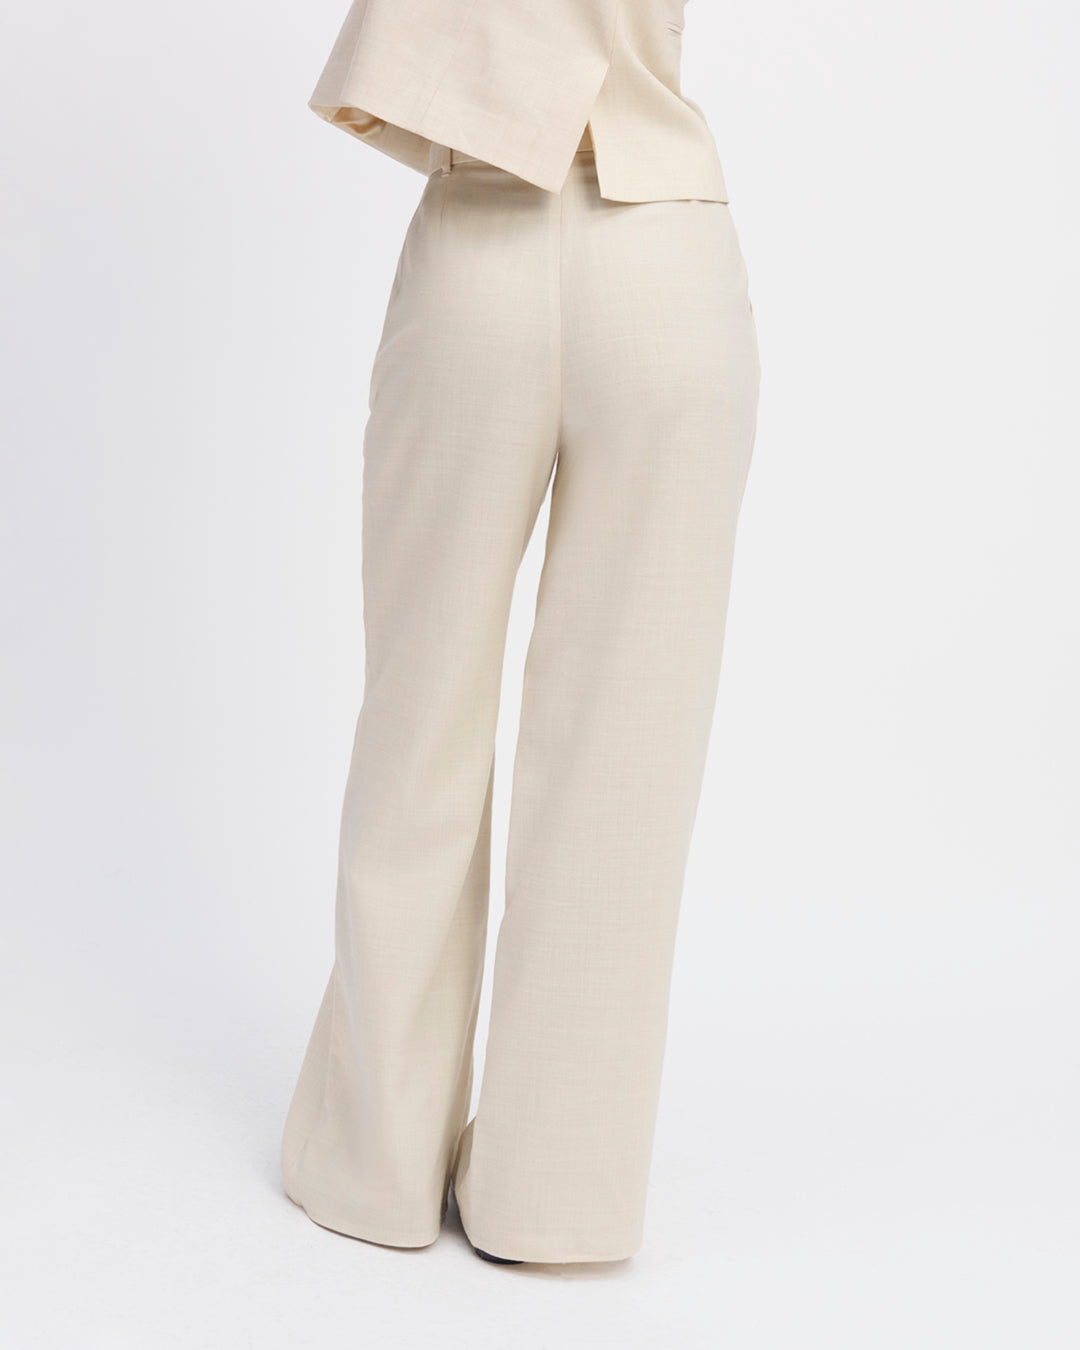 Pantalon-tailleur-beige-coupe-palazzo-taille-haute-détails-double-plis-bas-de-jambe-XXL-dessine-taille-jambes-ceinture-à-boucle-ceinture-amovible-ton-sur-ton-17H10-tailleurs-pour-femme-paris-